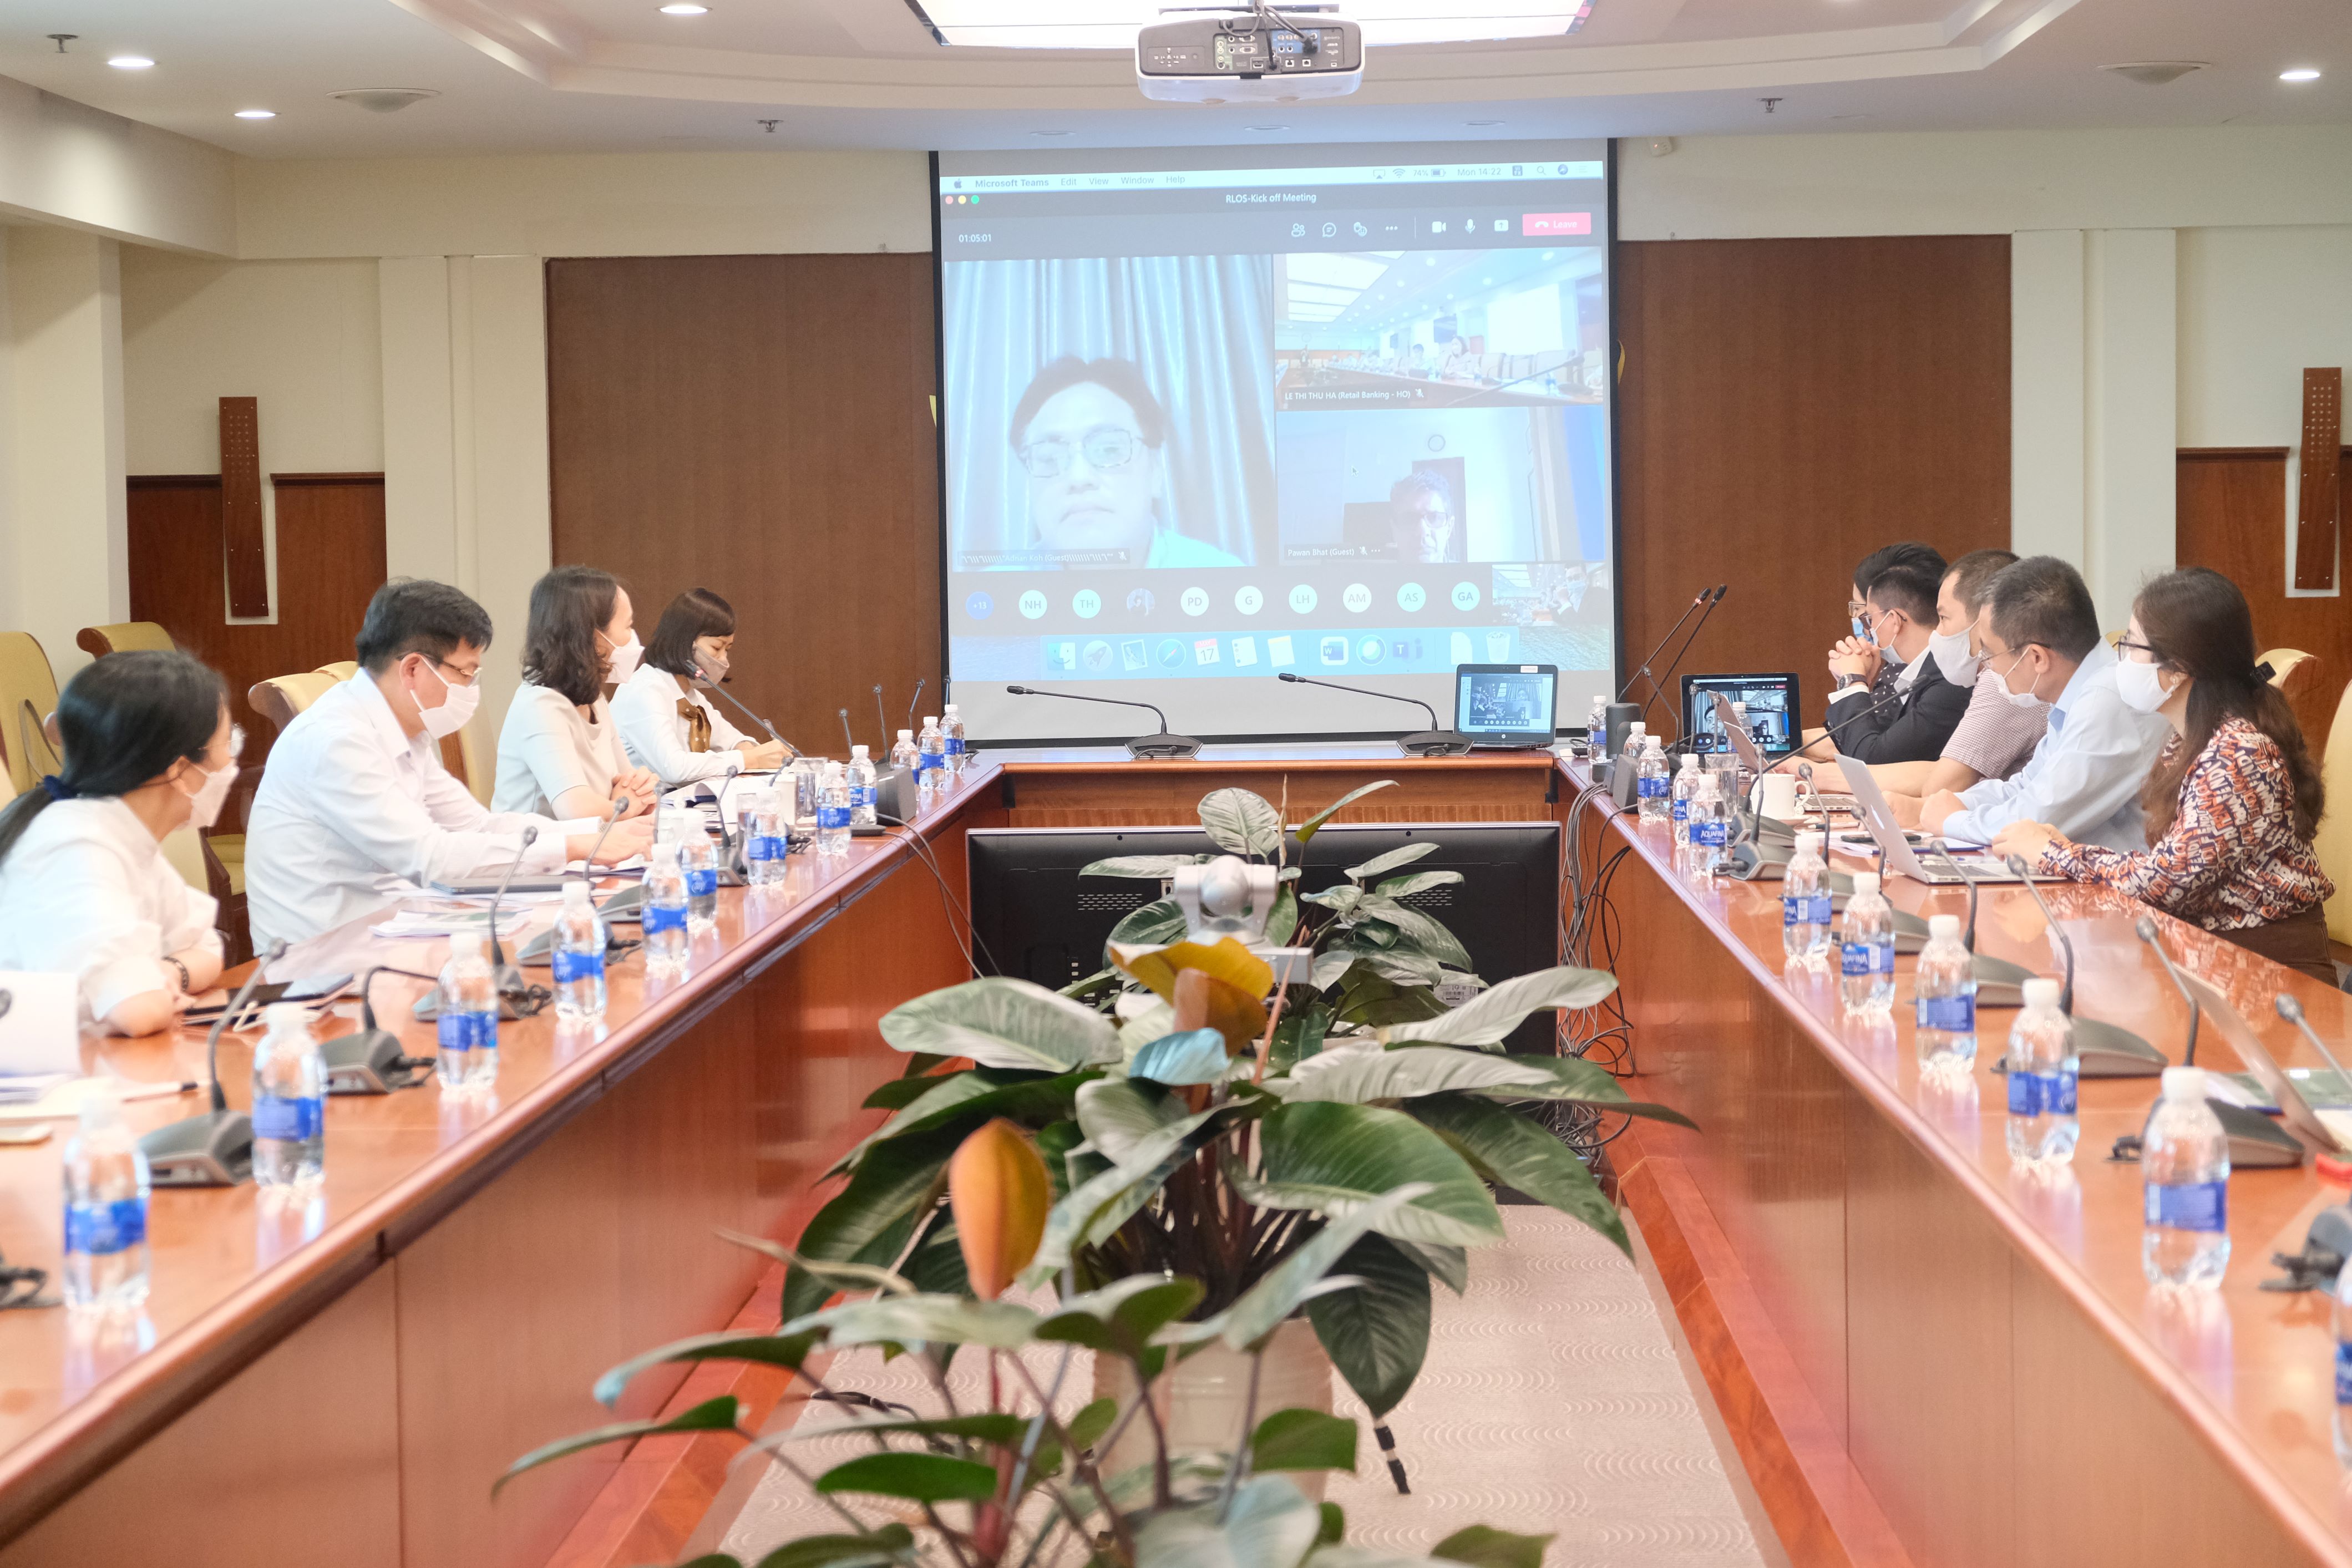 Quang cảnh lễ khởi động dự án tQuang cảnh lễ khởi động dự án thực hiện qua cầu truyền hìnhực hiện qua cầu truyền hình